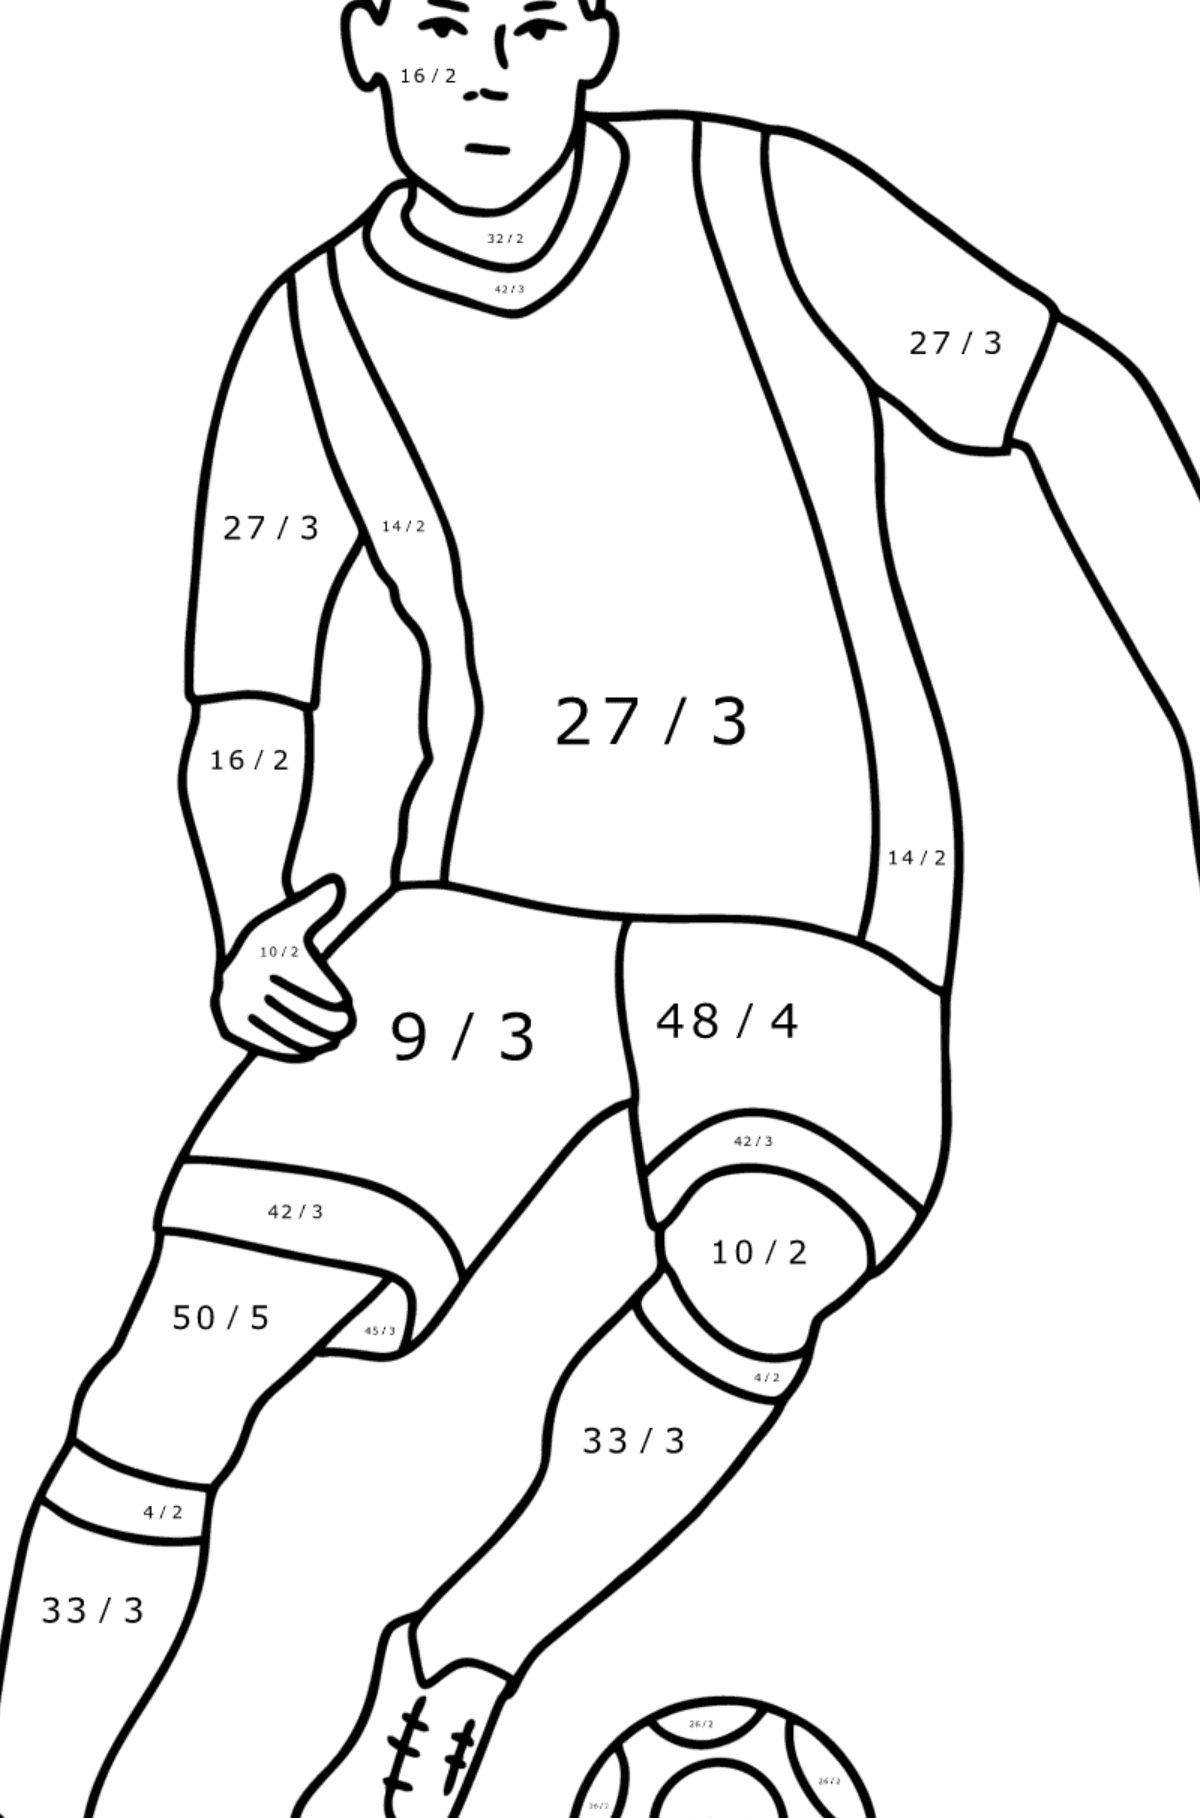 UEFA-Fußballspieler ausmalbild - Mathe Ausmalbilder - Division für Kinder